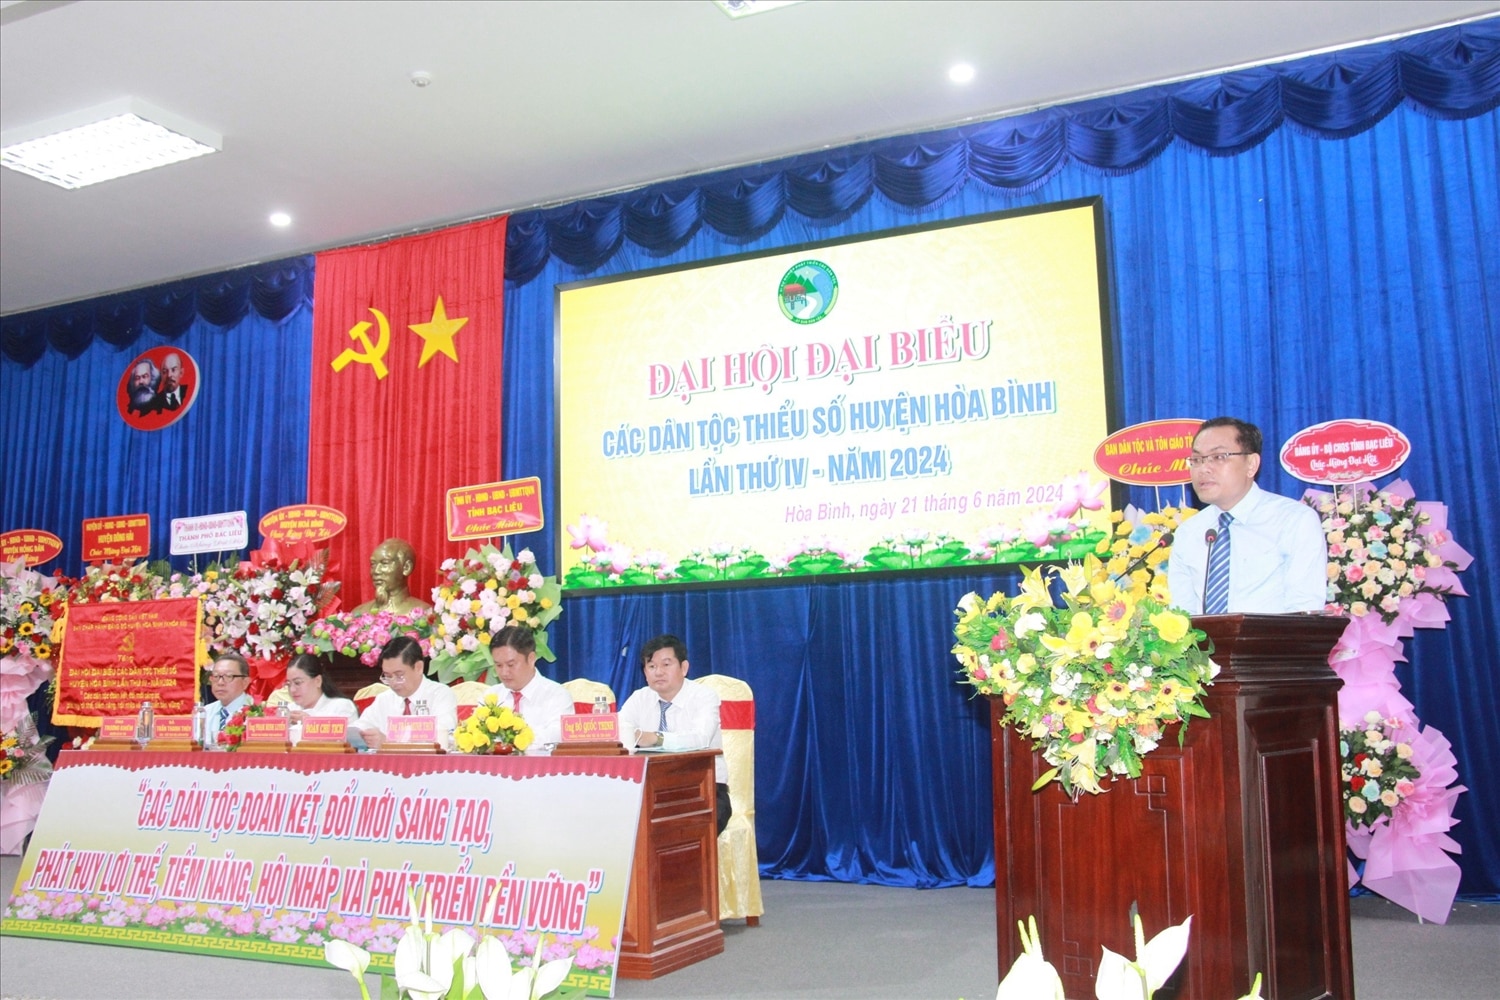 Ông Ngô Vũ Thăng - Phó Chủ tịch UBND tỉnh, Trưởng Ban chỉ đạo Đại hội đại biểu các DTTS tỉnh Bạc Liêu lần thứ IV - năm 2024 phát biểu chỉ đạo Đại hội